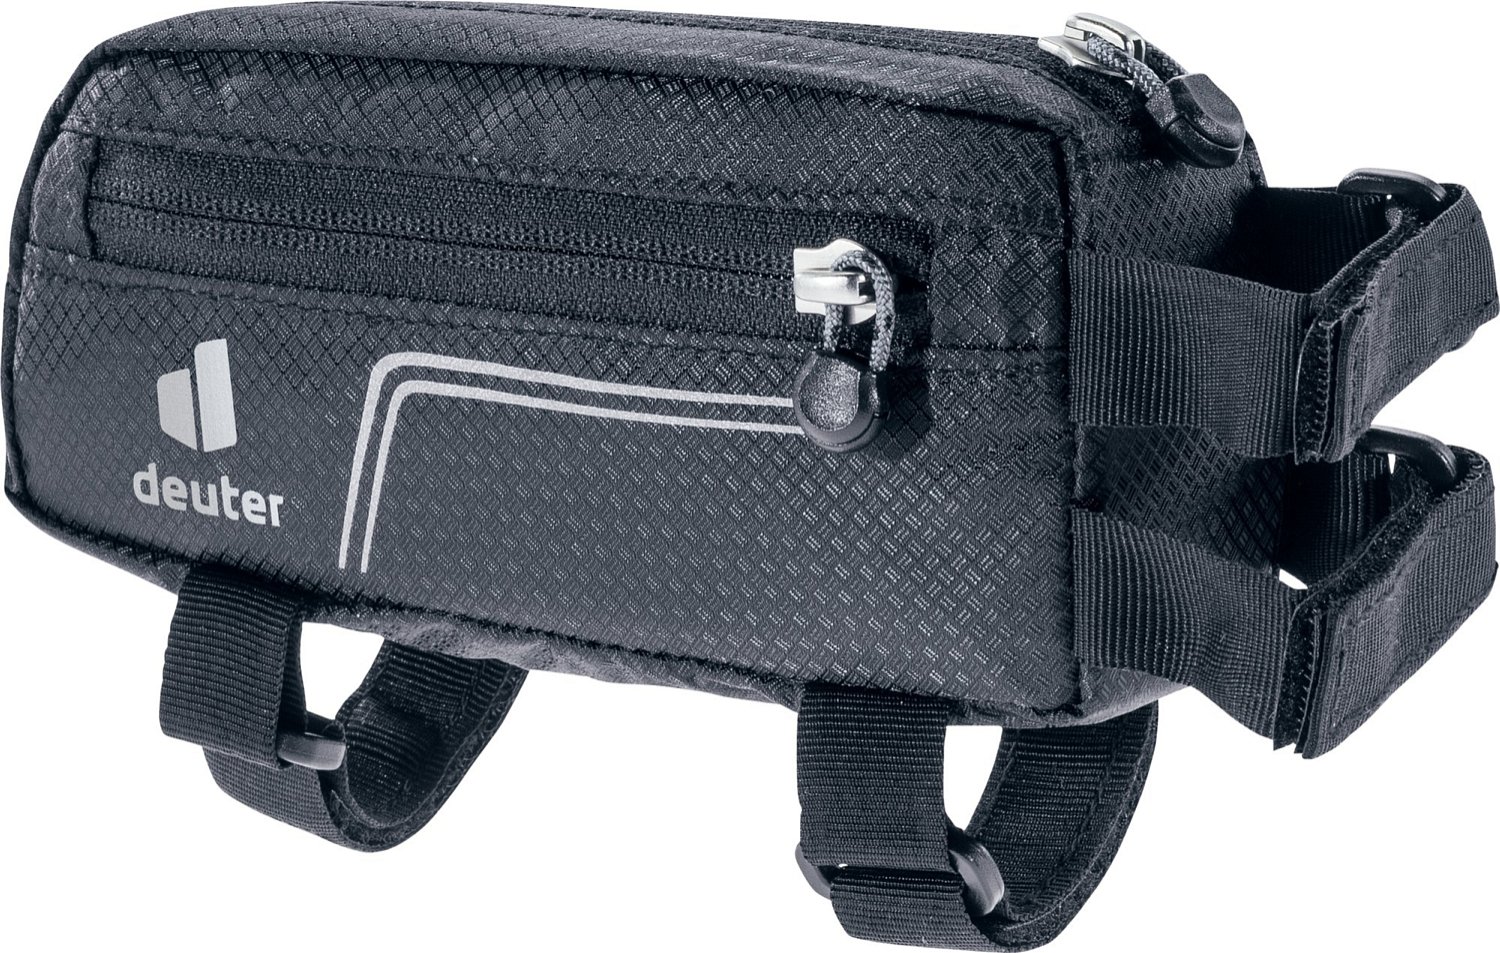 Велосумка Deuter Energy Bag, 0.5 л, на раму, Black, 2021, 3290221_7000 сумка велосипедная merida triangle framebag под раму 3 л 27×5 5×22cm 106 гр black grey 2276004530